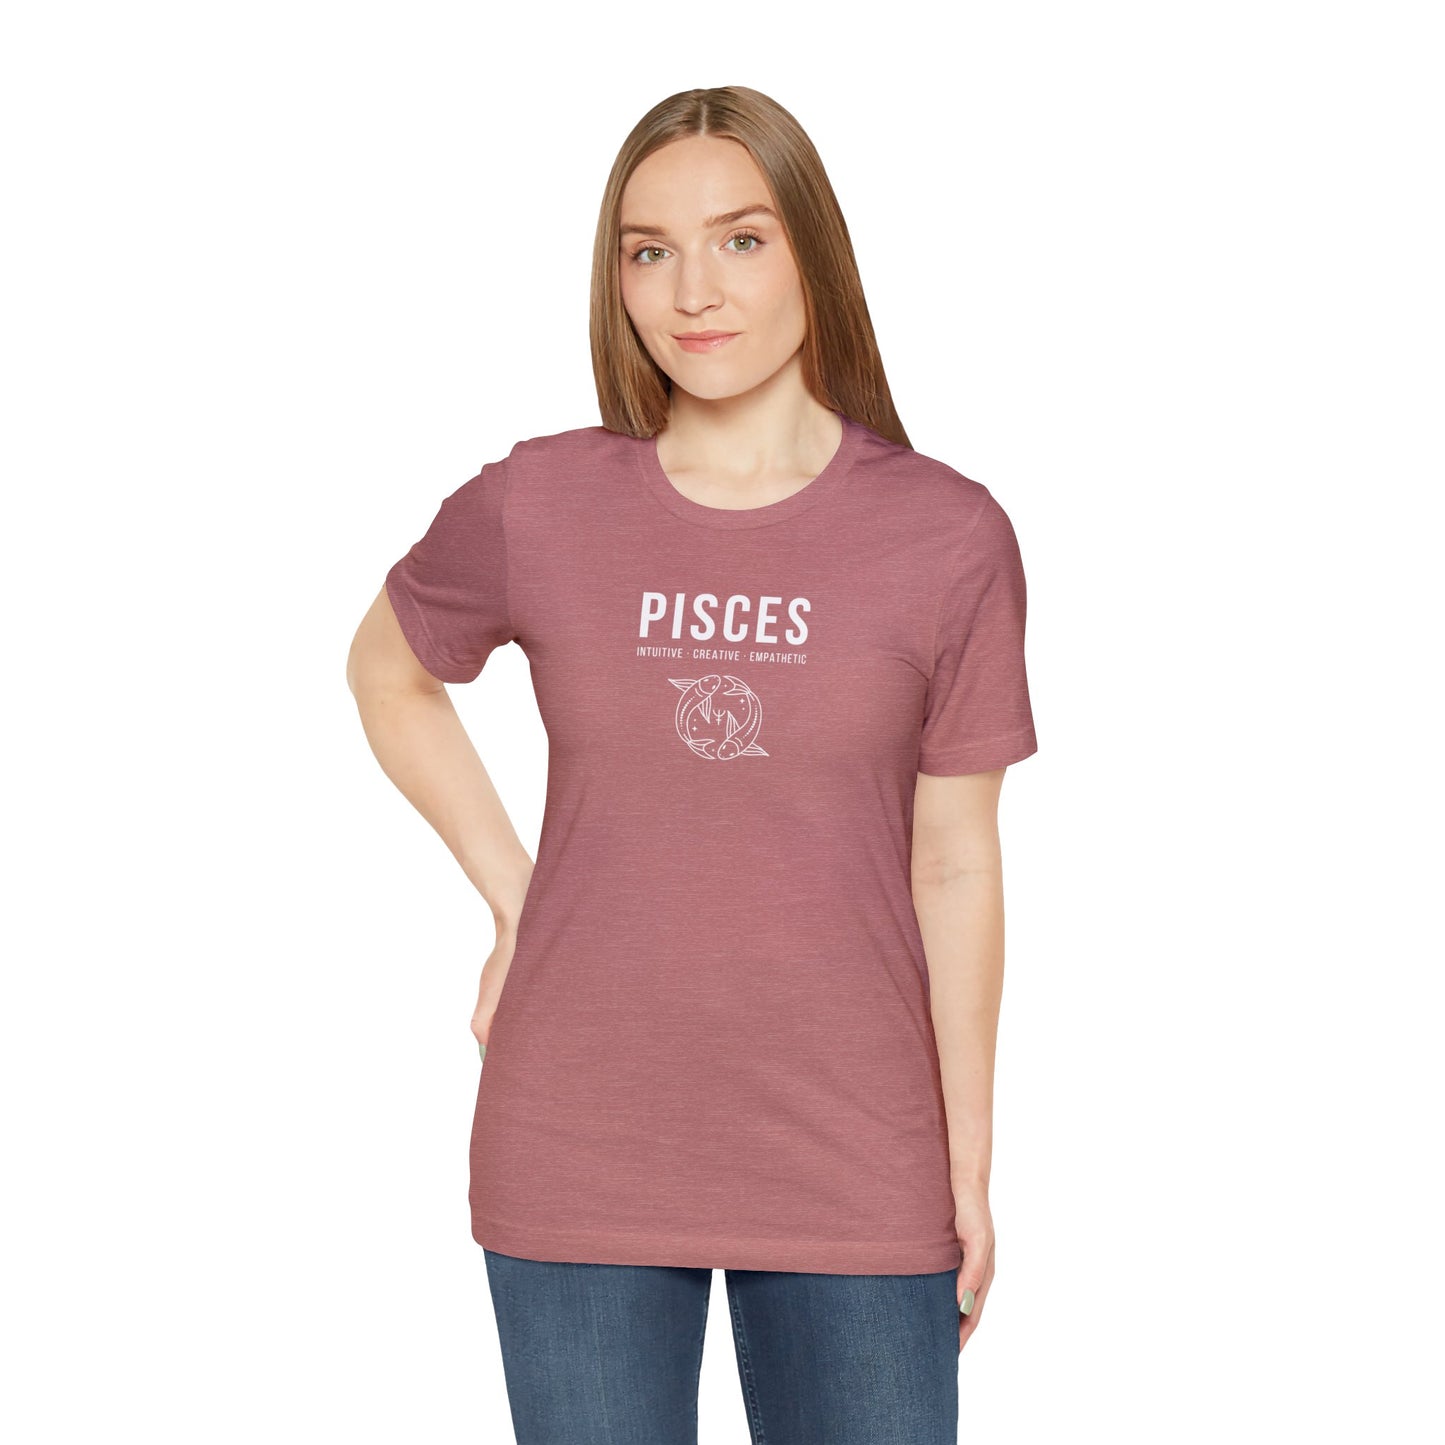 Pisces Shirt Unisex Short Sleeve Tee